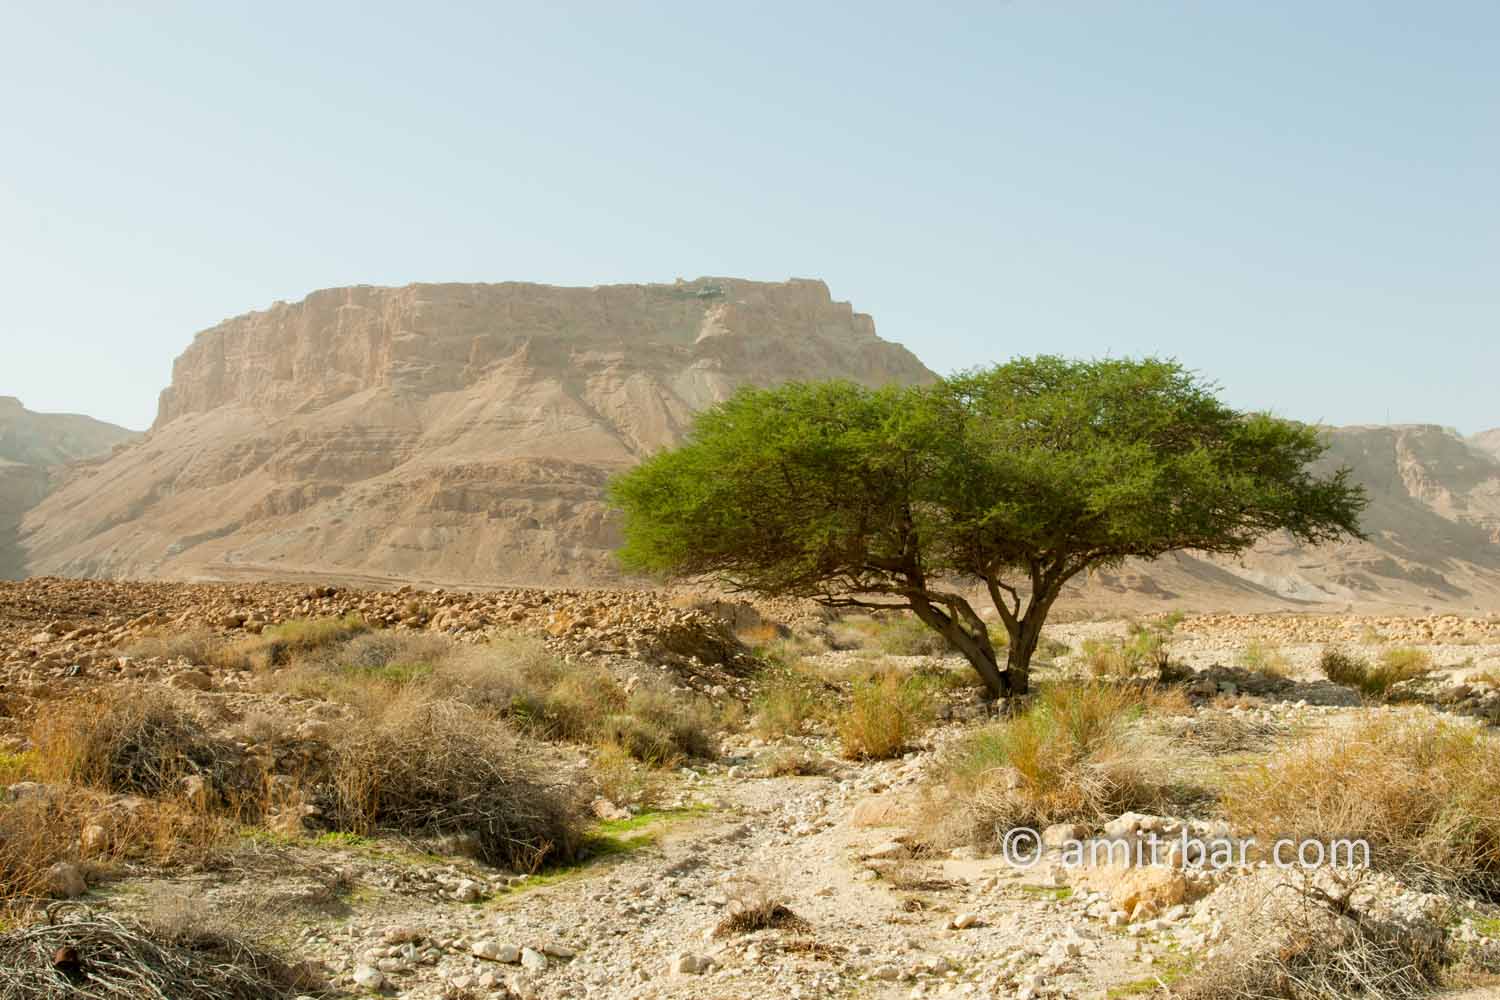 Masada: Masada and Acacia tree